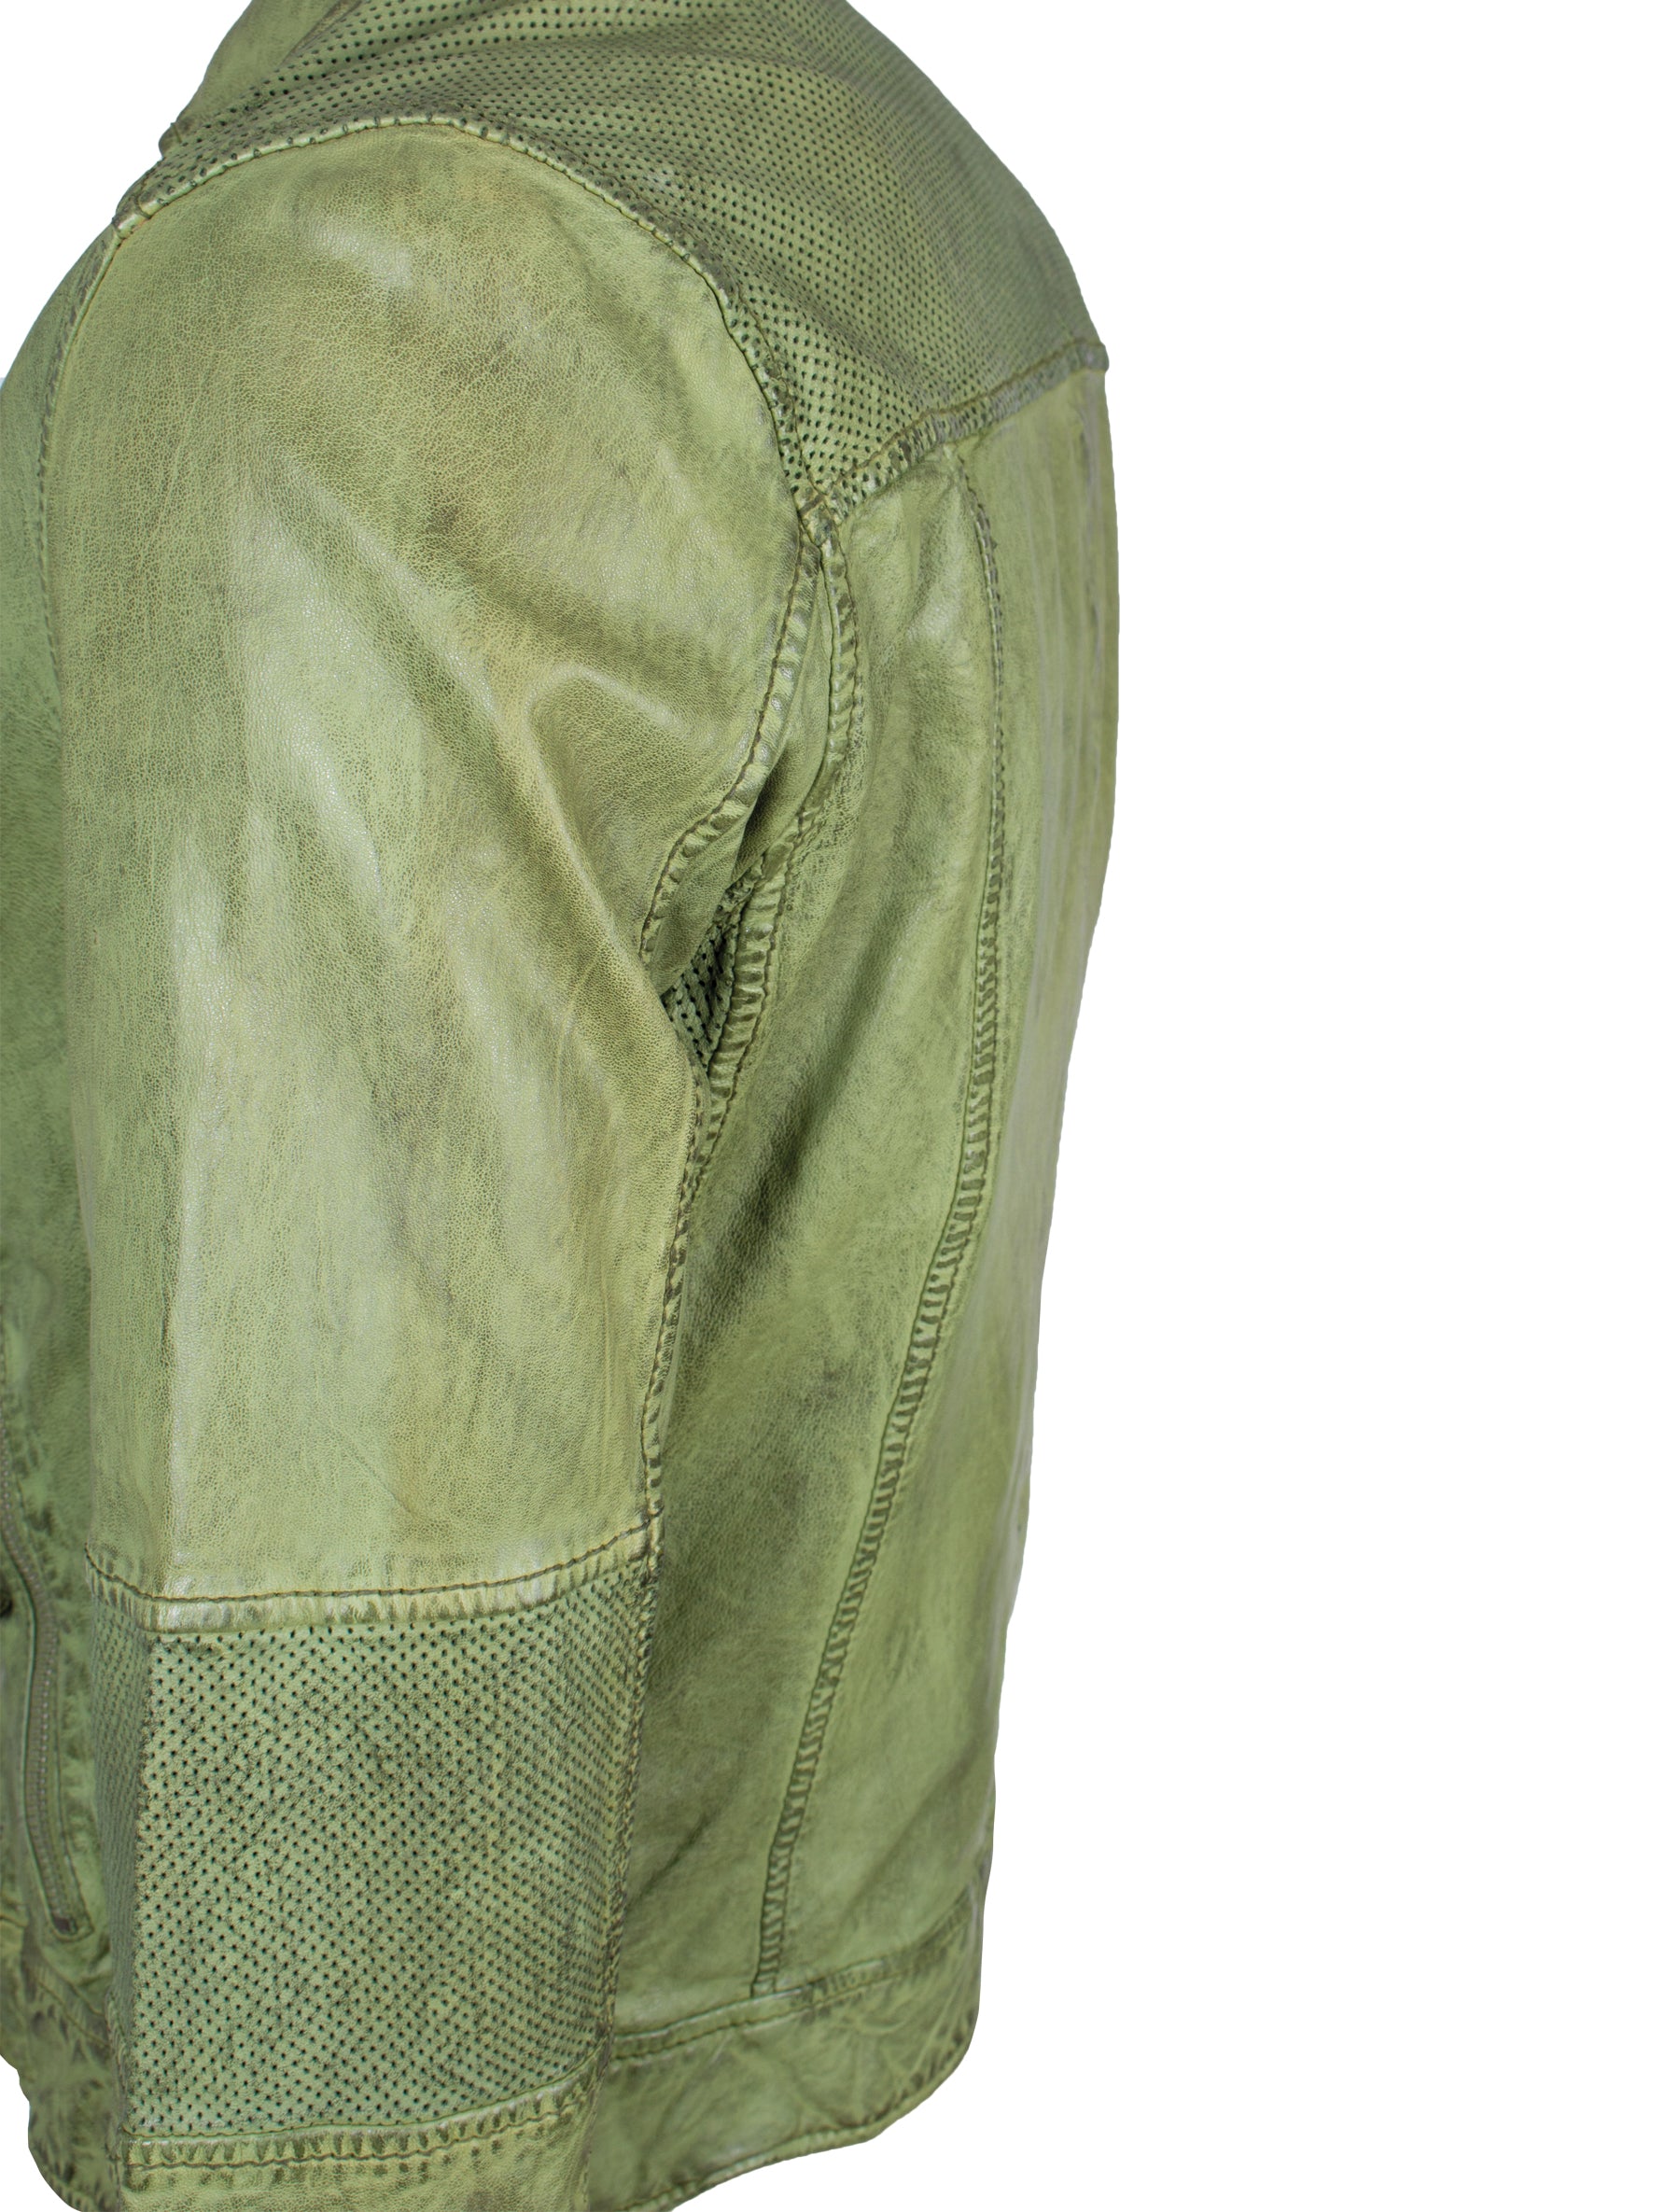 Kurze, perforierte Damen Lederjacke im Used look - Bila in grün